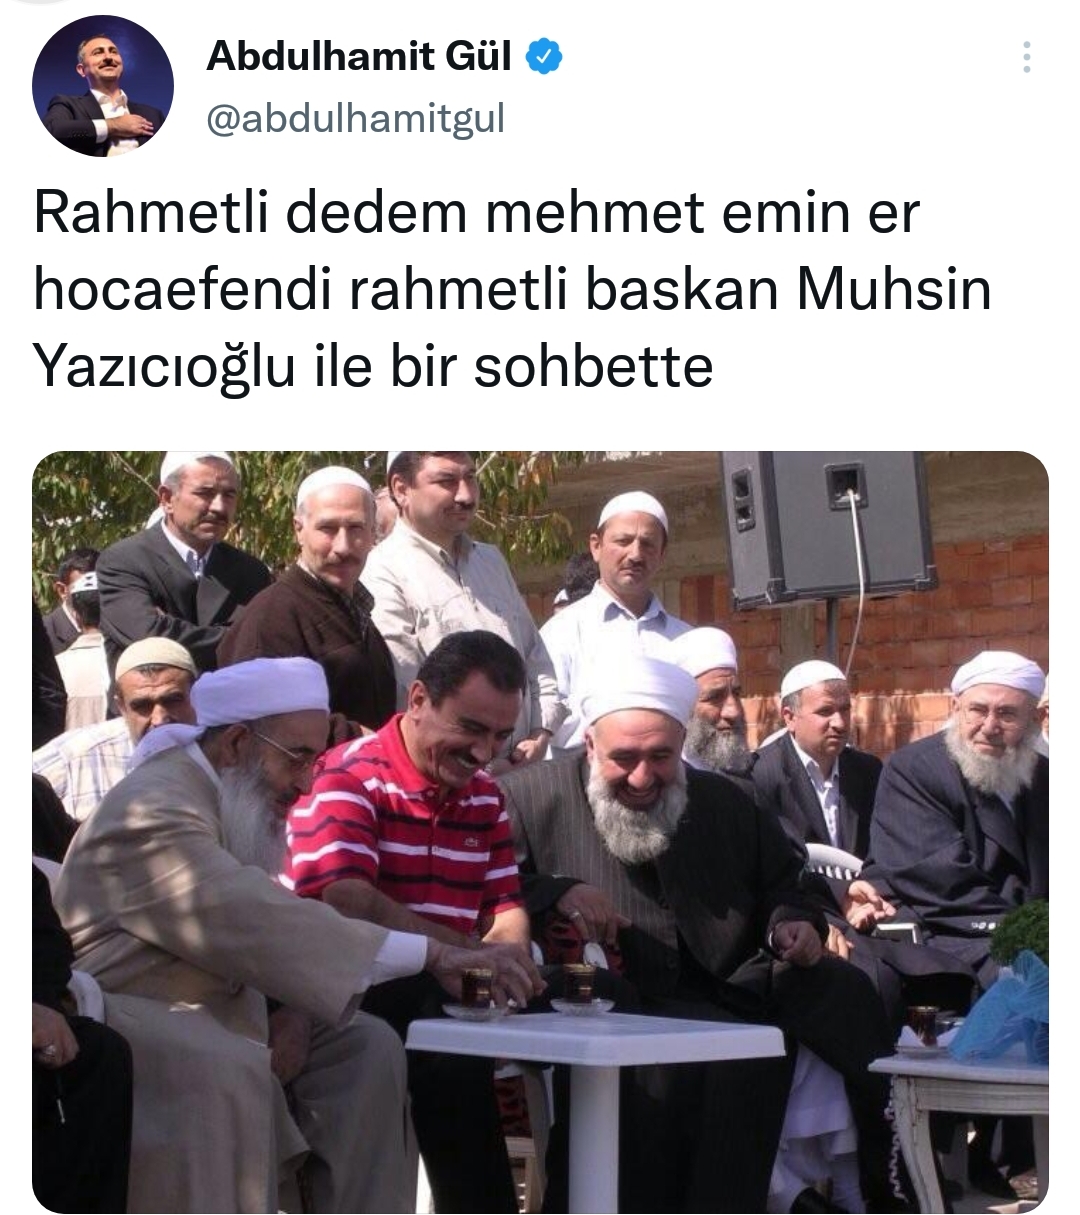 muhsin yazıcıoğlu nu kim öldürdü